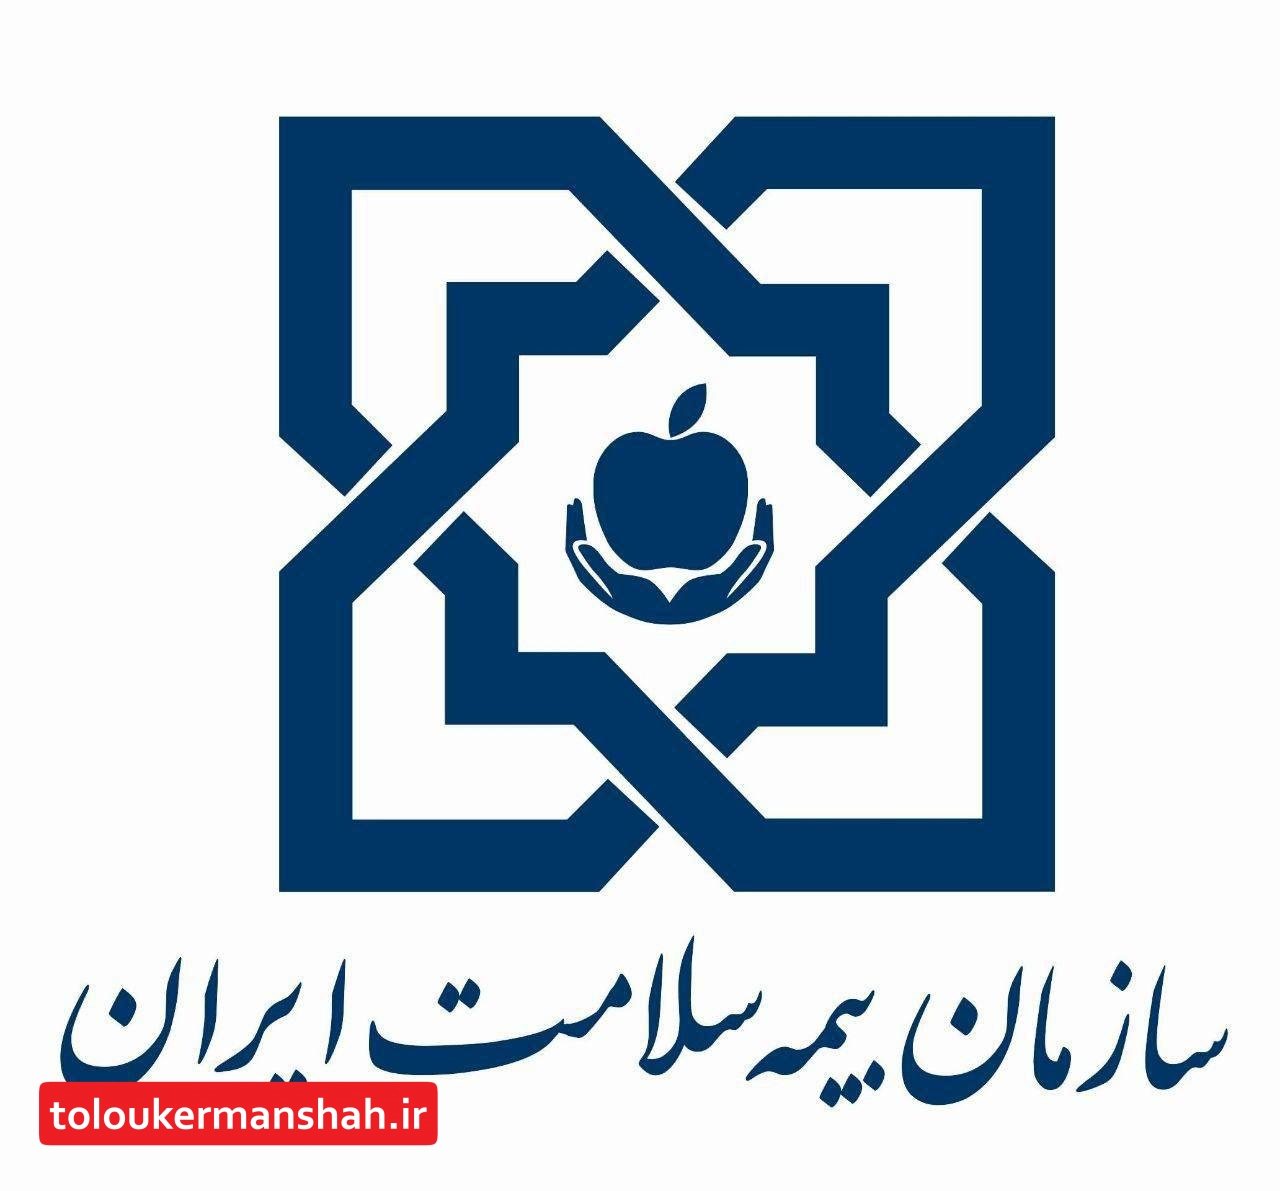 بیمه سلامت کرمانشاه فقط نسخه تجویزی الکترونیکی می پذیرد